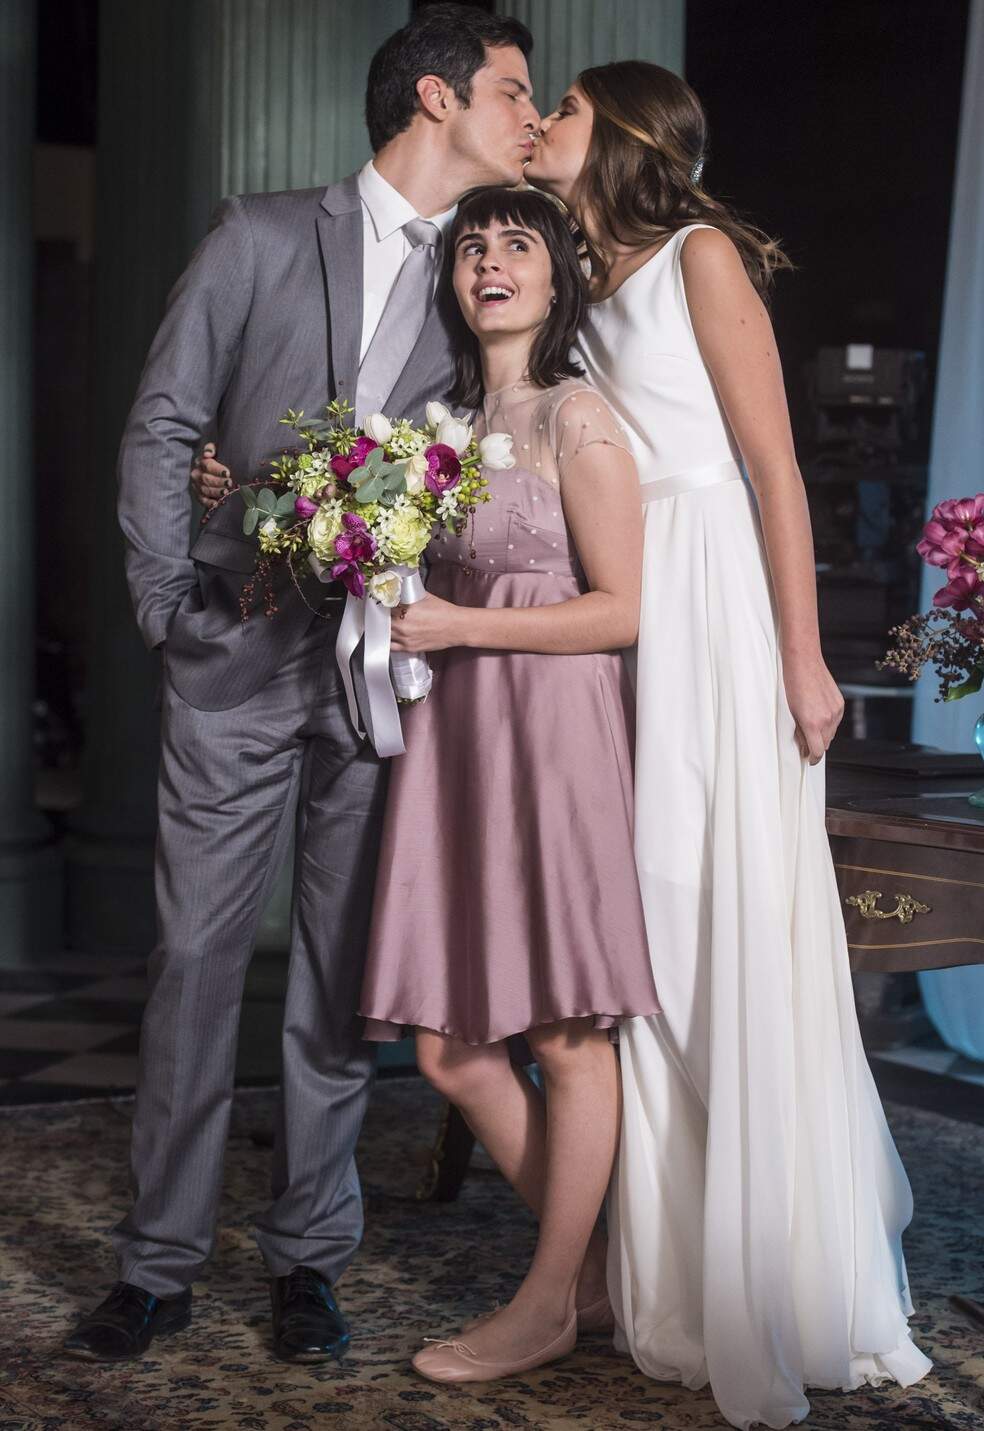 Bebeth, filha de Erick, no casamento do pai (Foto: TV Globo)